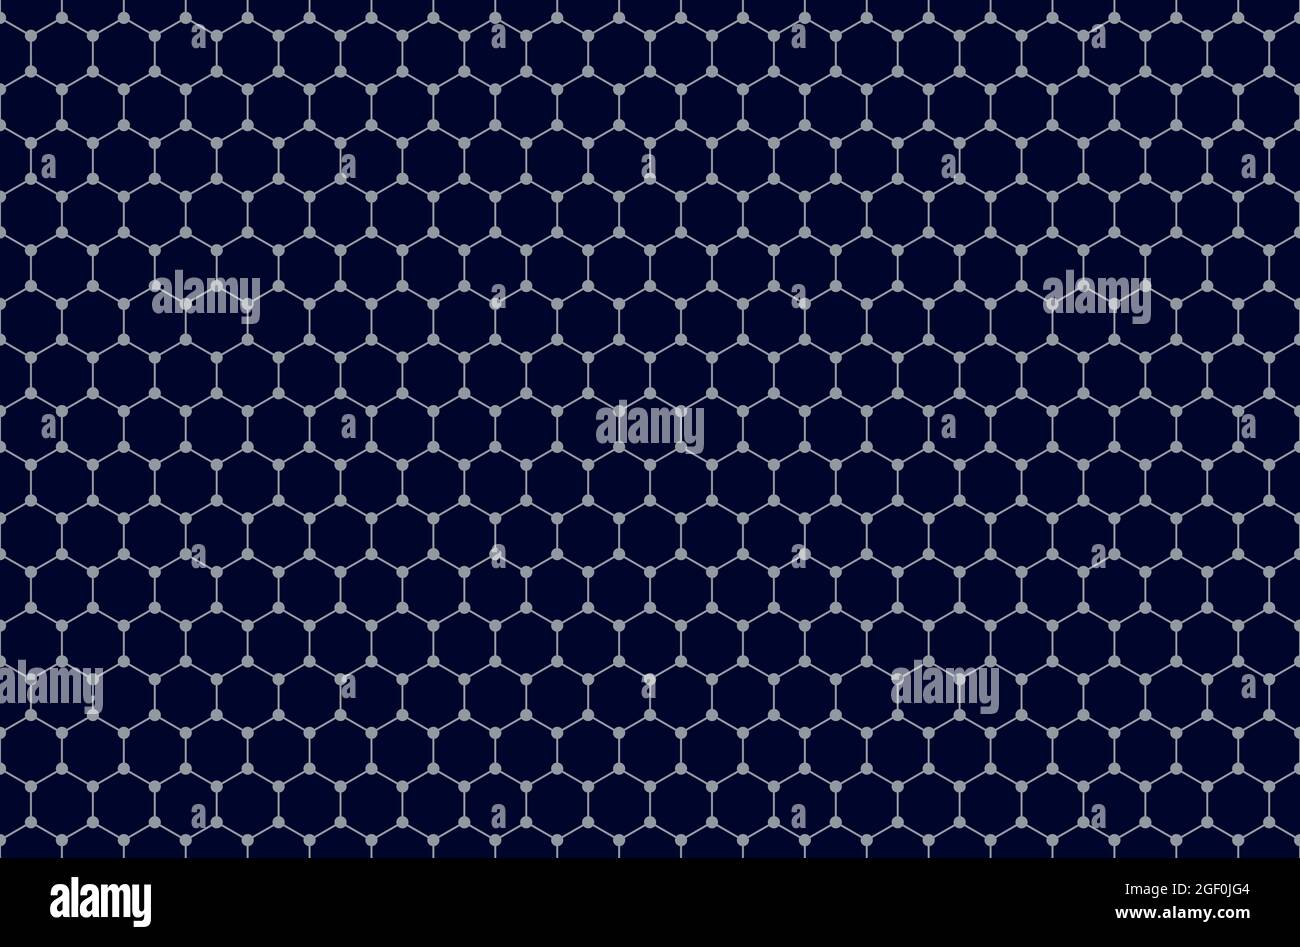 Arrière-plan de motif graphique sans couture. Carreau de réseau en nid d'abeille en deux dimensions, structure schématique d'une seule couche d'atomes de carbone. Banque D'Images